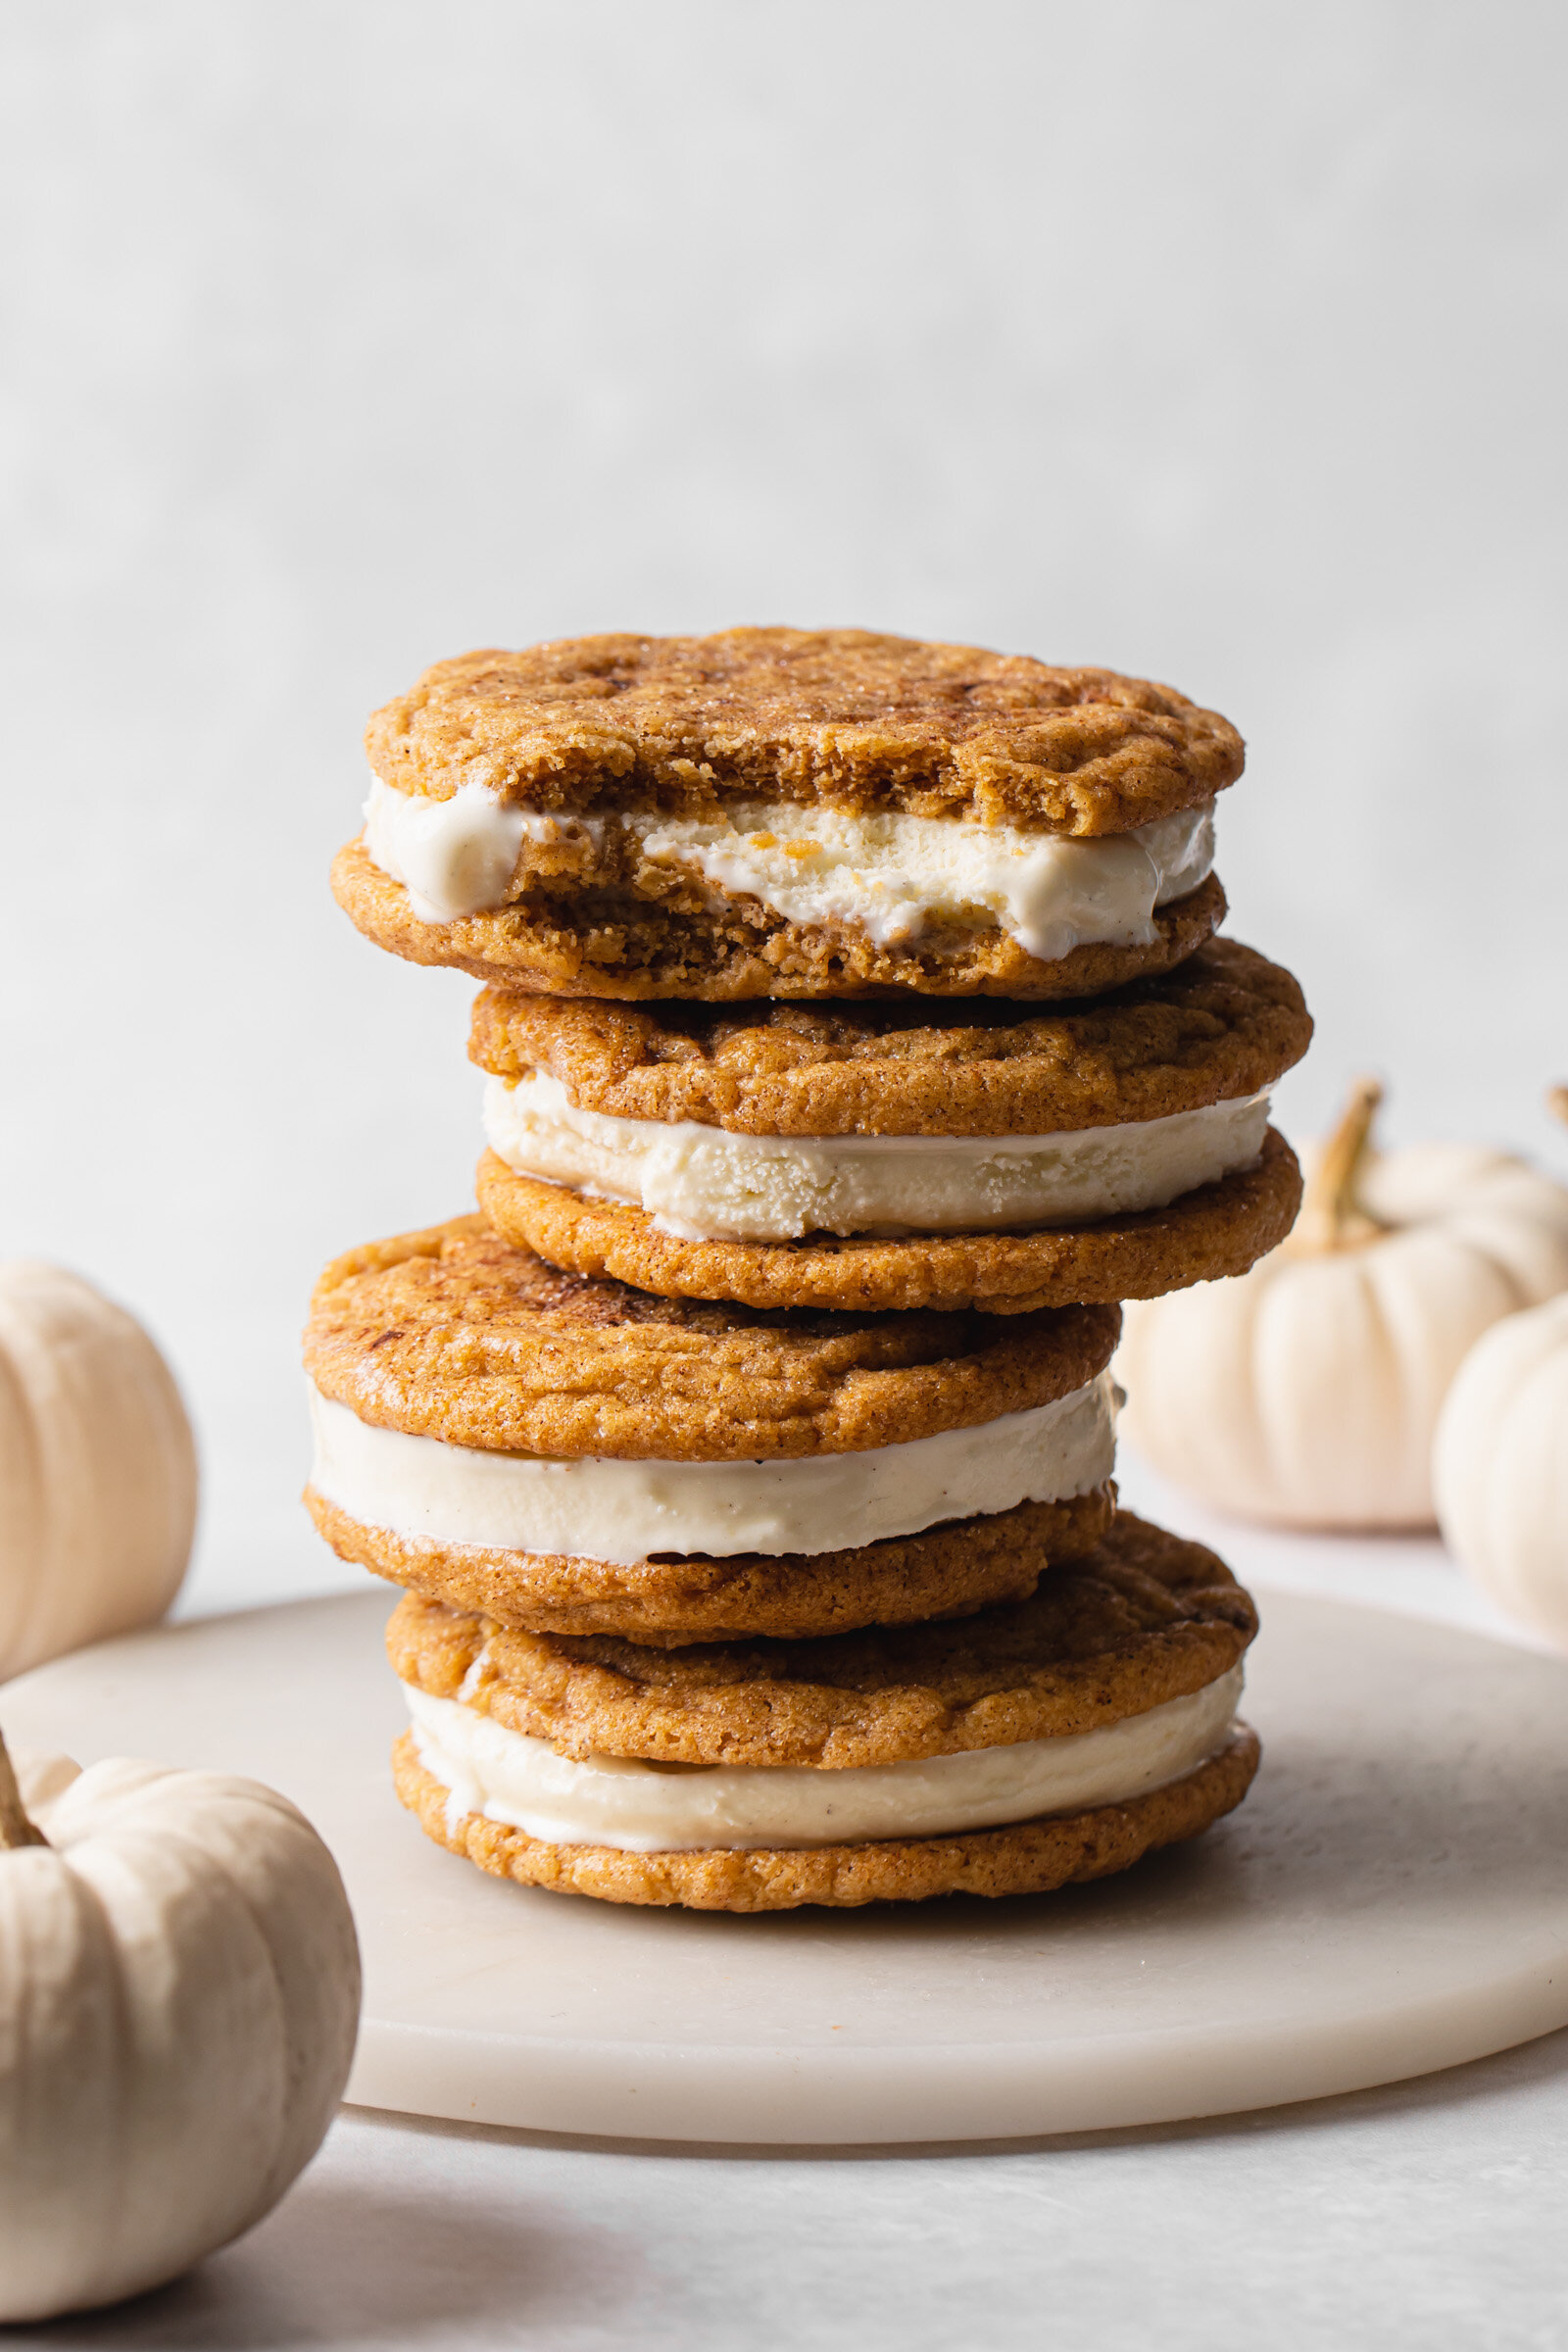 A towering stack of Pumpkin Snickerdoodle Cookies with vanilla ice cream in between.